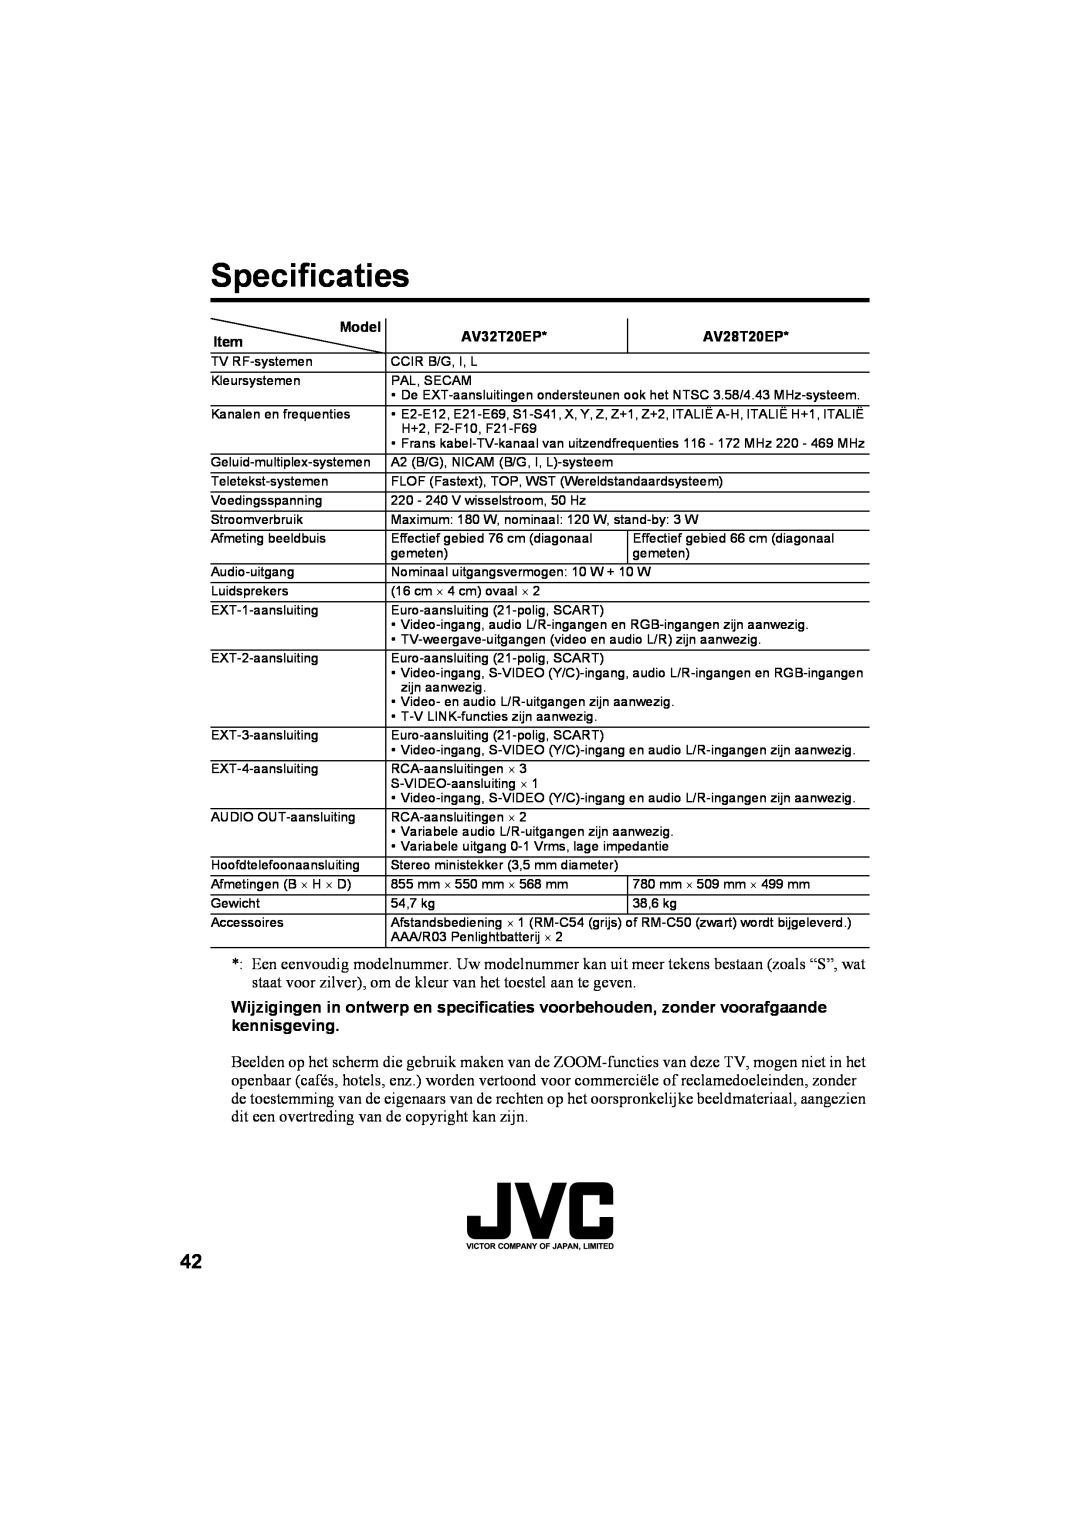 JVC AV28T20EP, AV32T20EP manual Specificaties 